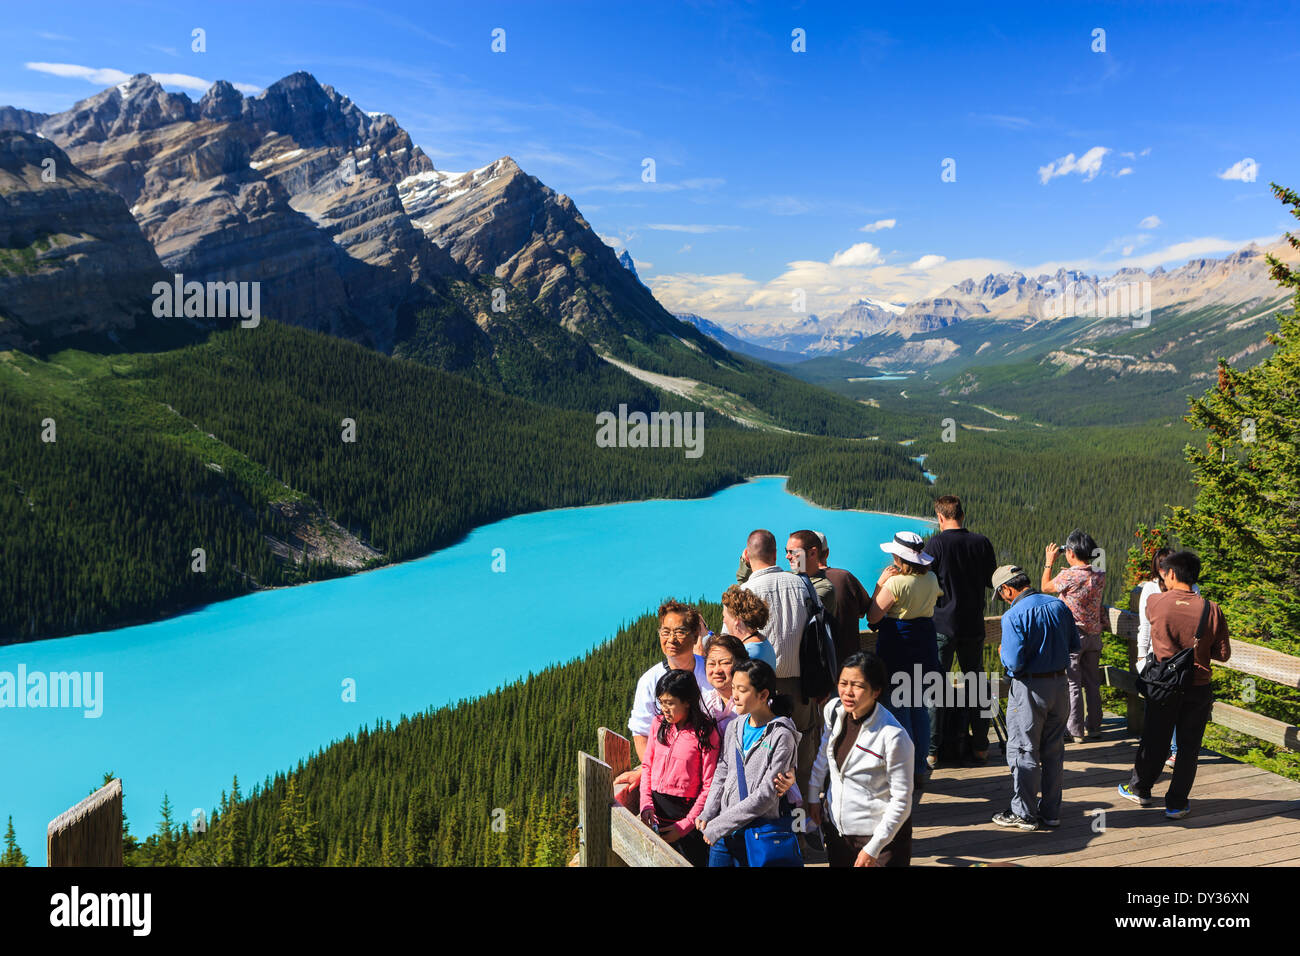 Surplombant le lac Peyto Banff dans N.P, Alberta, Canada Banque D'Images